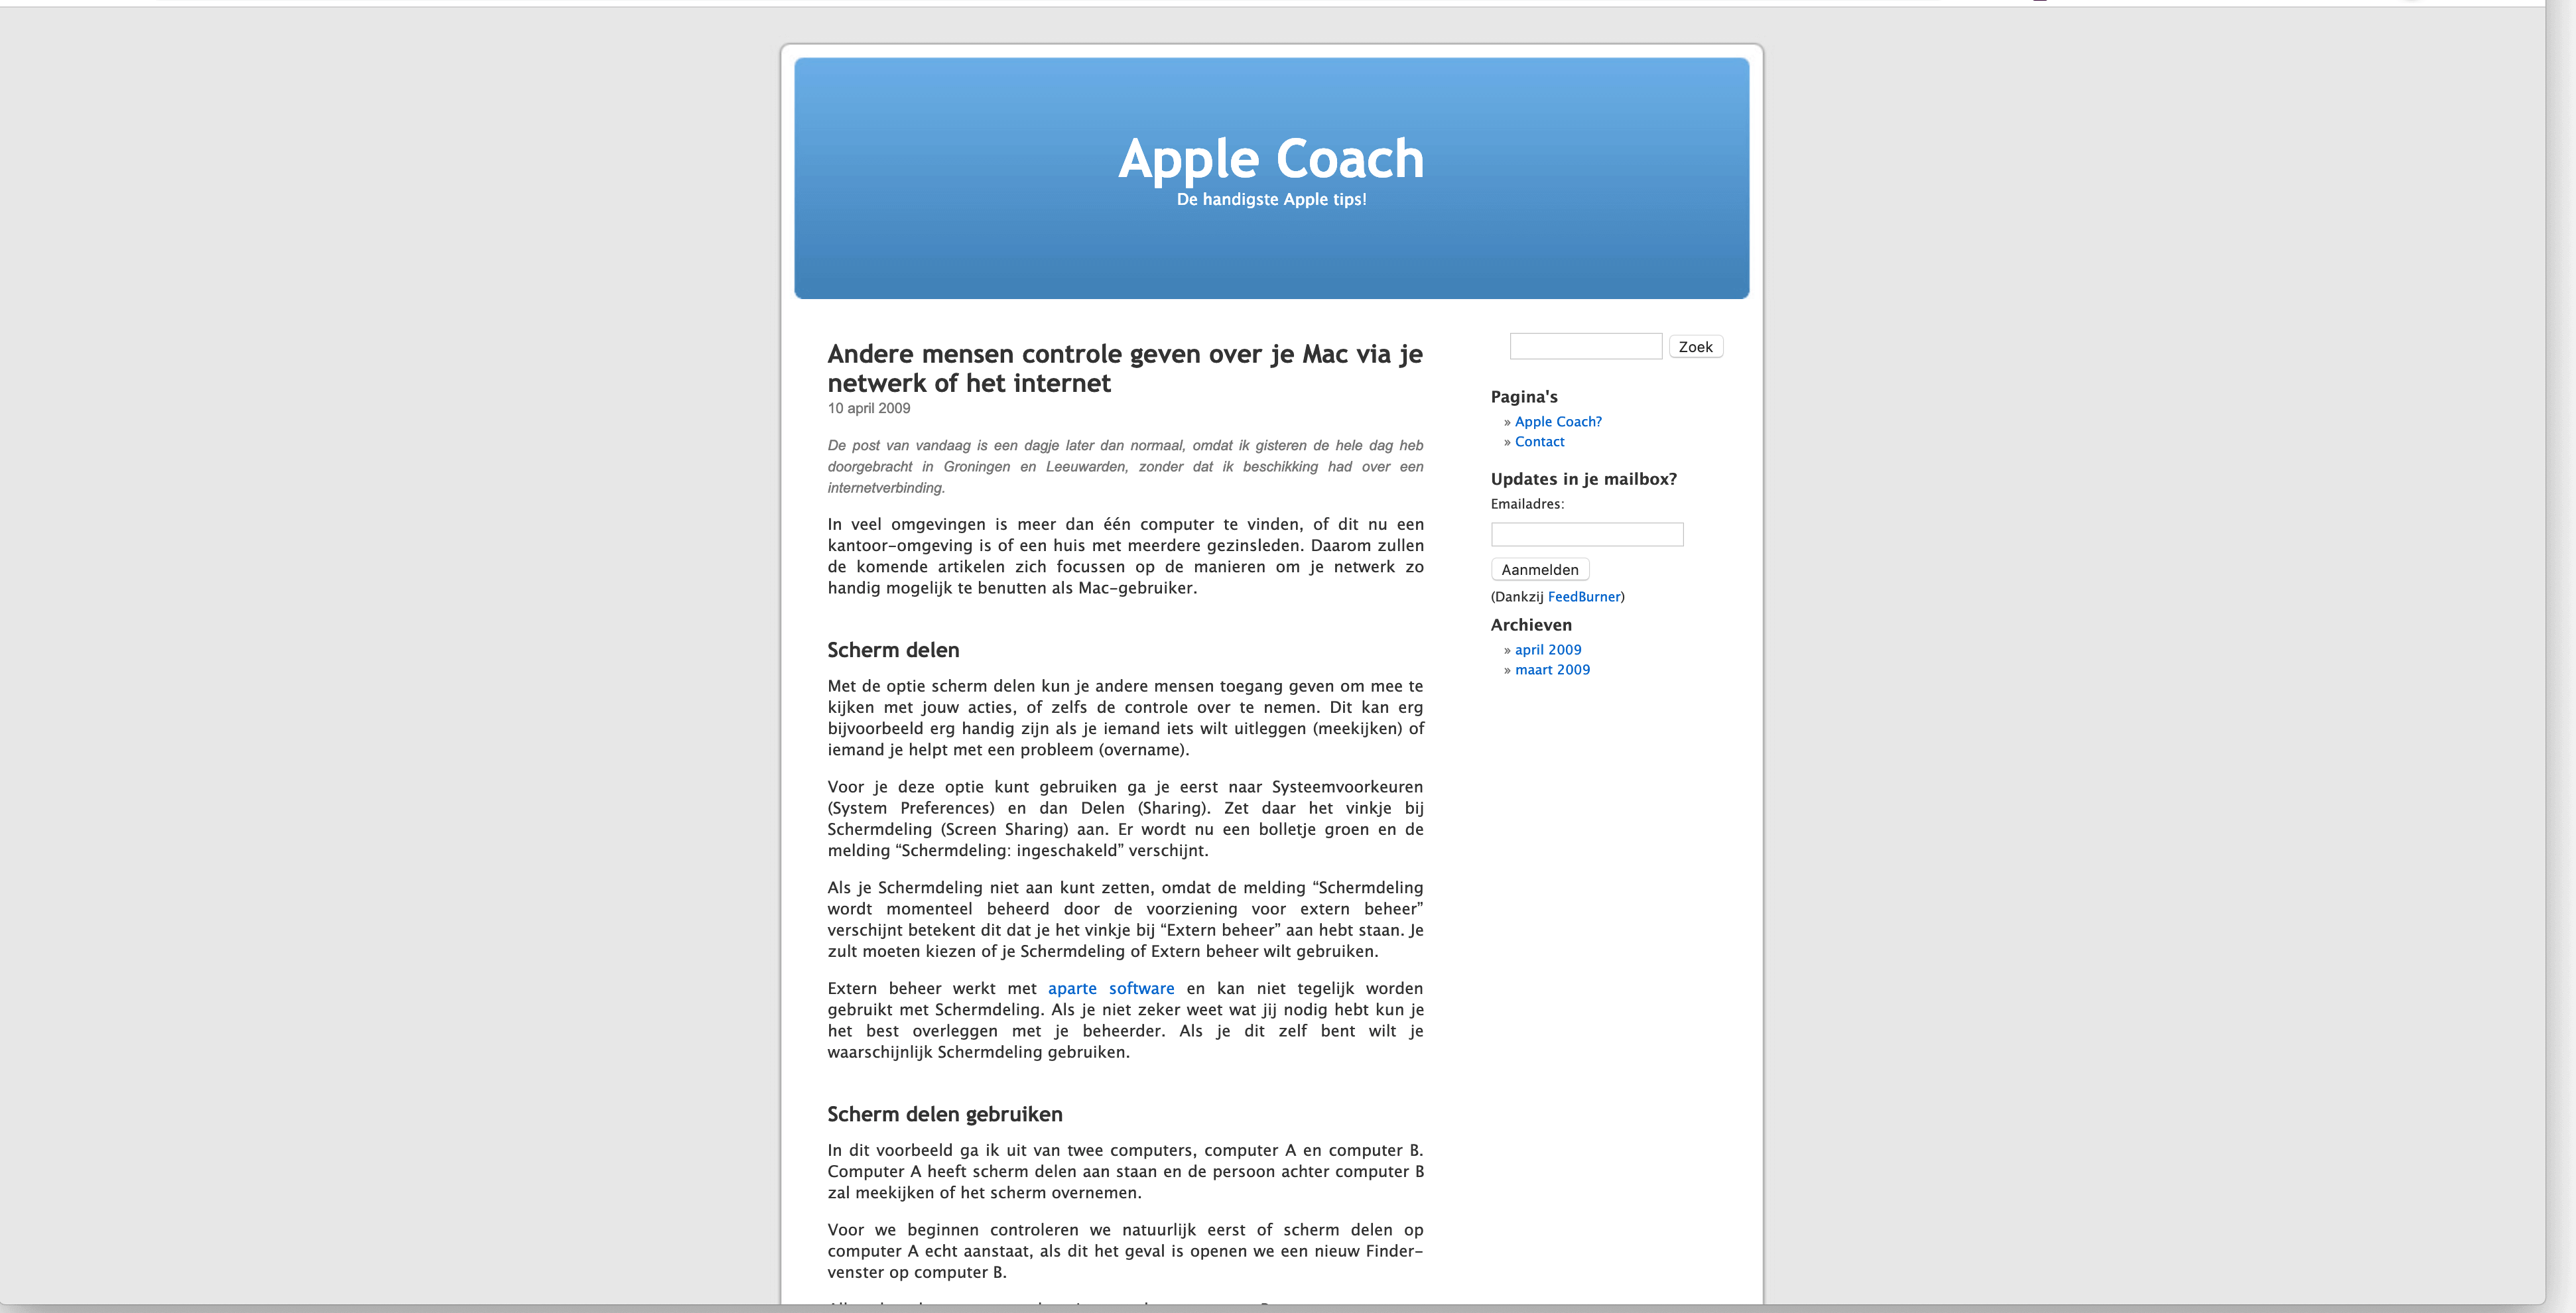 Het originele screenshot artikel op de Apple Coach website